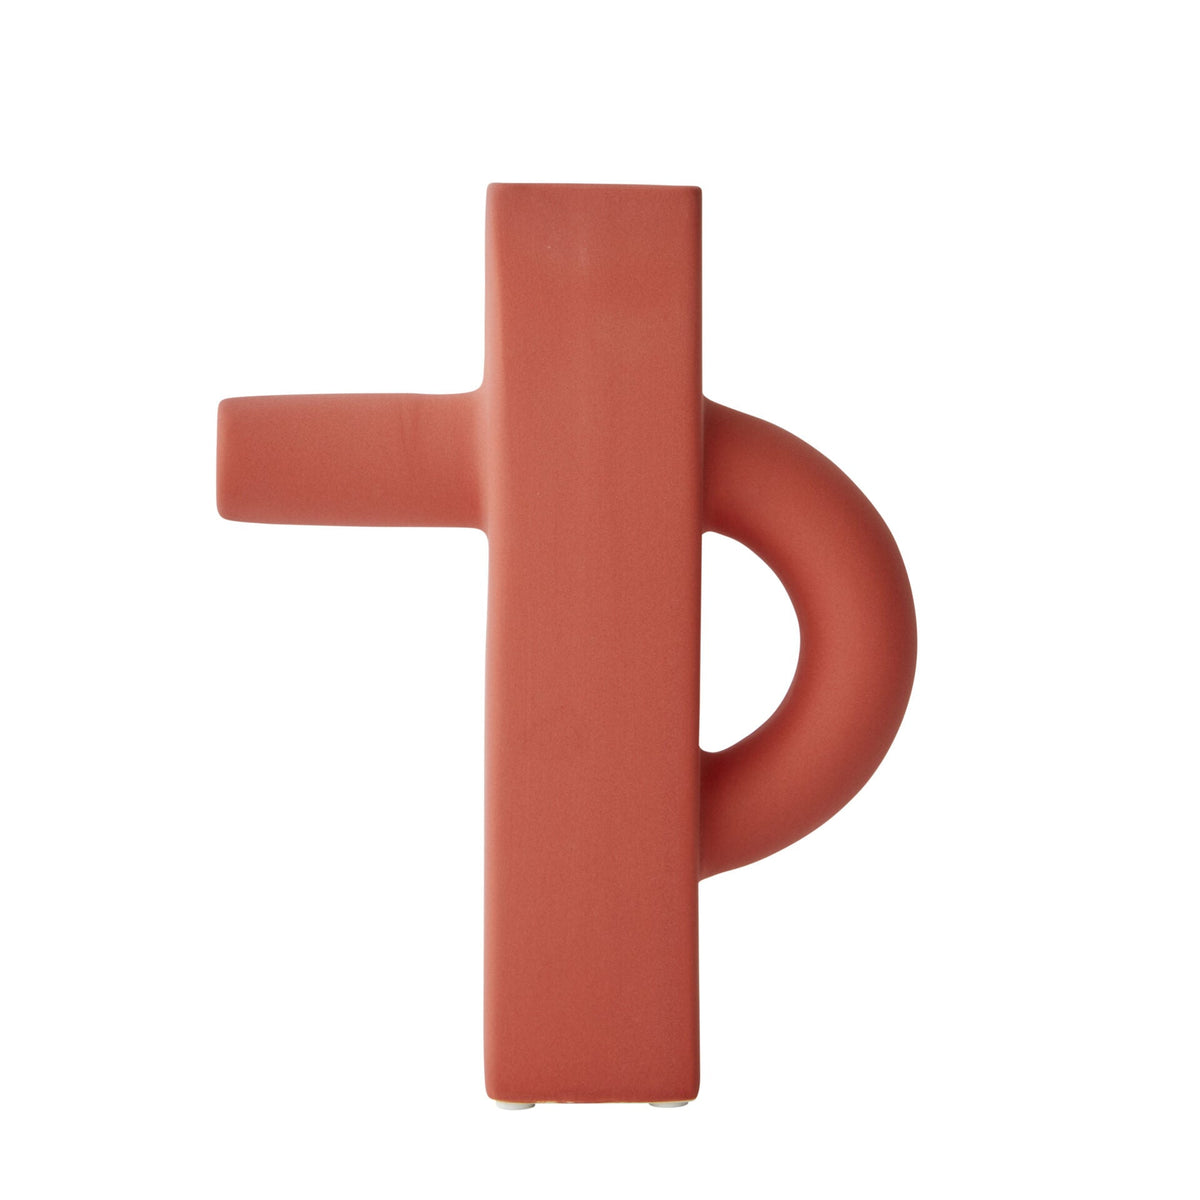 Curio Ceramic Vase in Red - 23.5cm - Notbrand